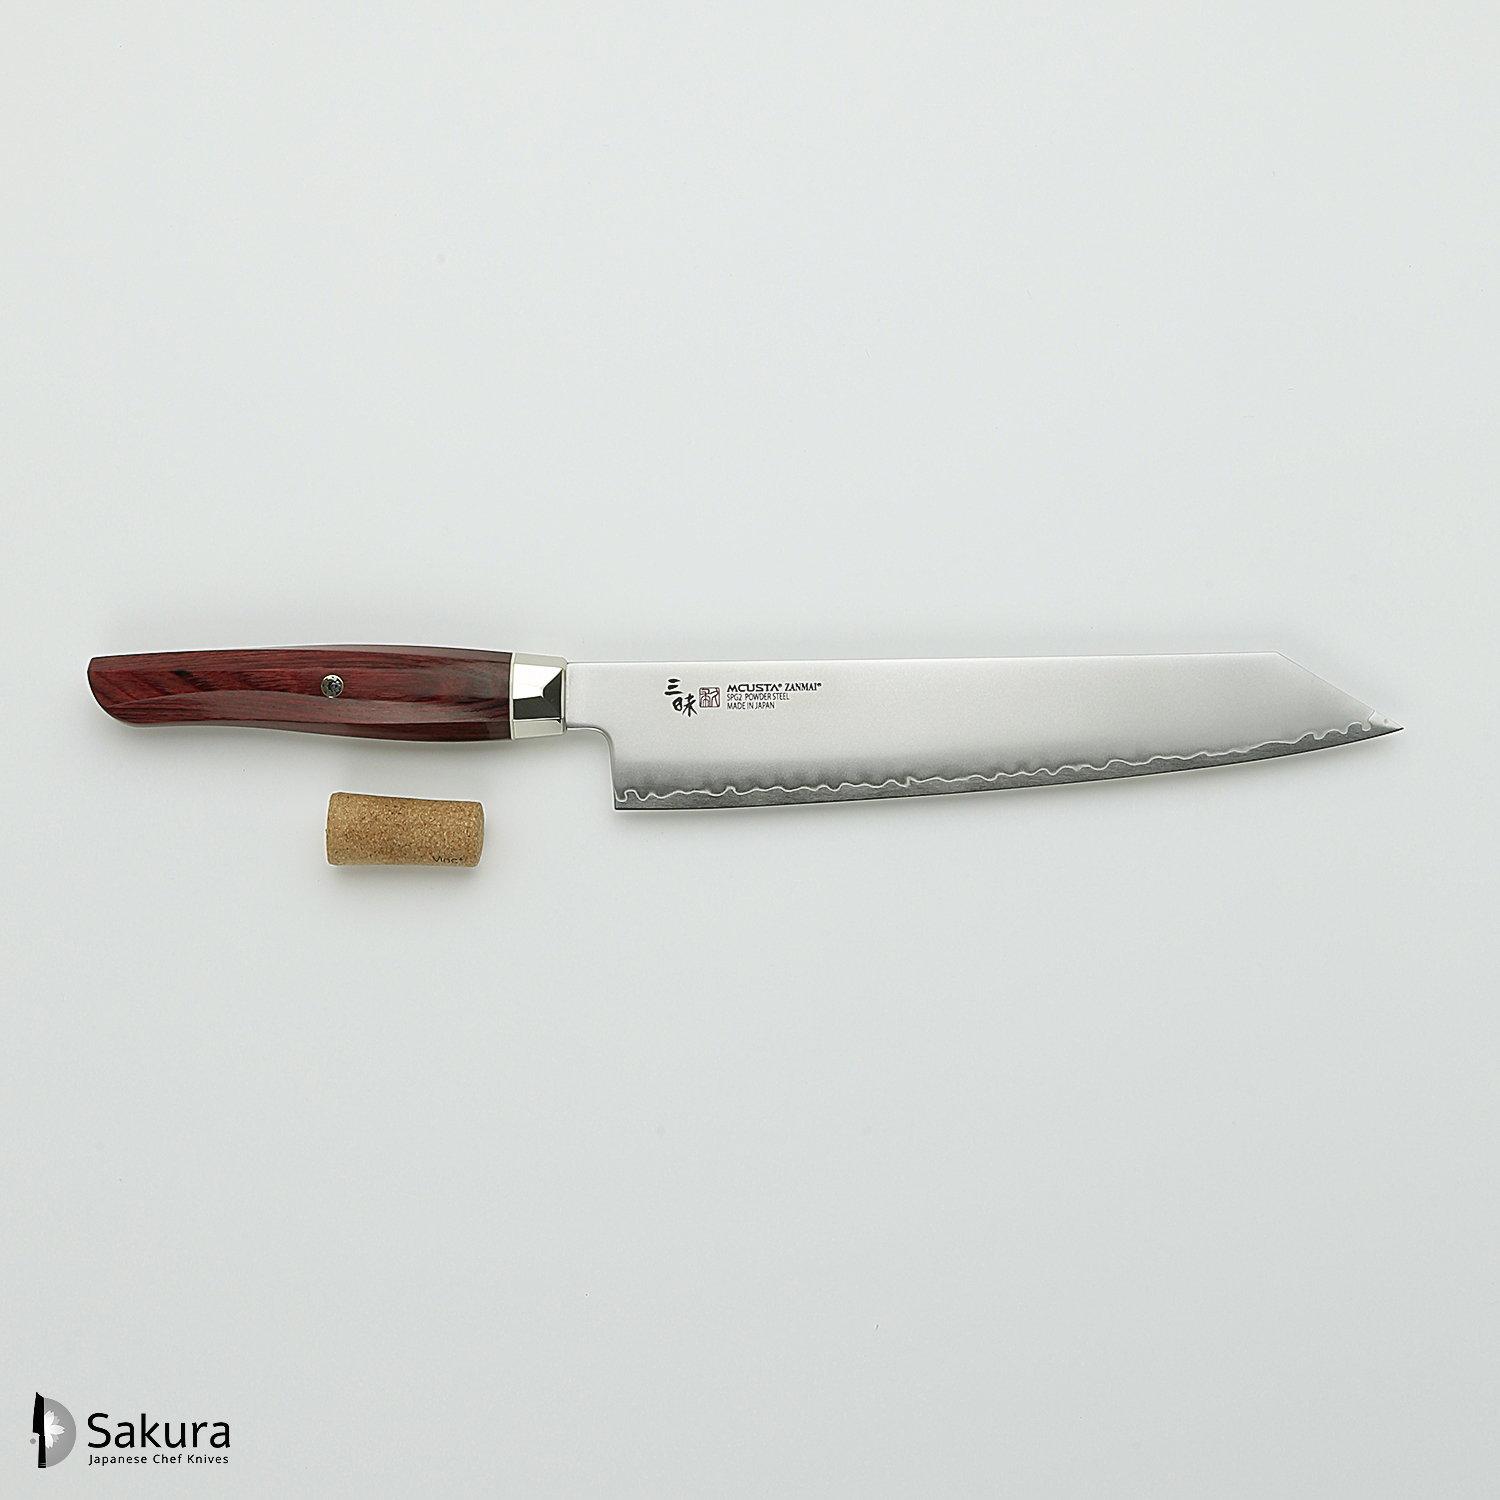 סכין שף רב-תכליתית קִּירִיצוּקֶה 230מ״מ מחושלת בעבודת יד 3 שכבות: פלדת פחמן יפנית מתקדמת מסוג R2/SG2 עטופה פלדת אל-חלד גימור מט מלוטש מקוסטה זאנמאיי יפן ZRR-1206G